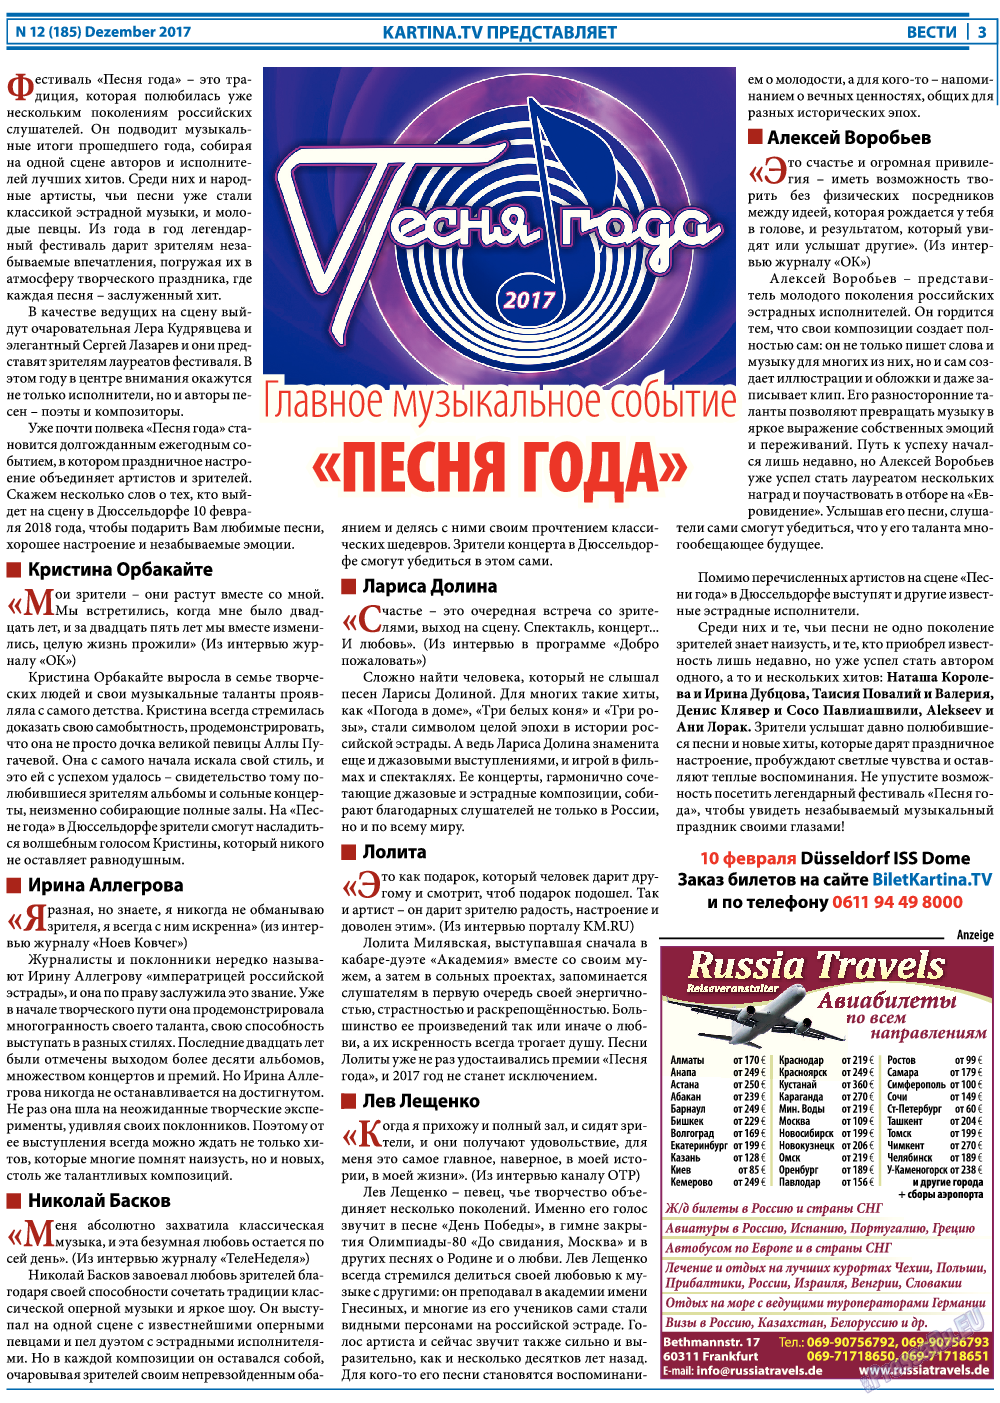 Вести, газета. 2017 №12 стр.3